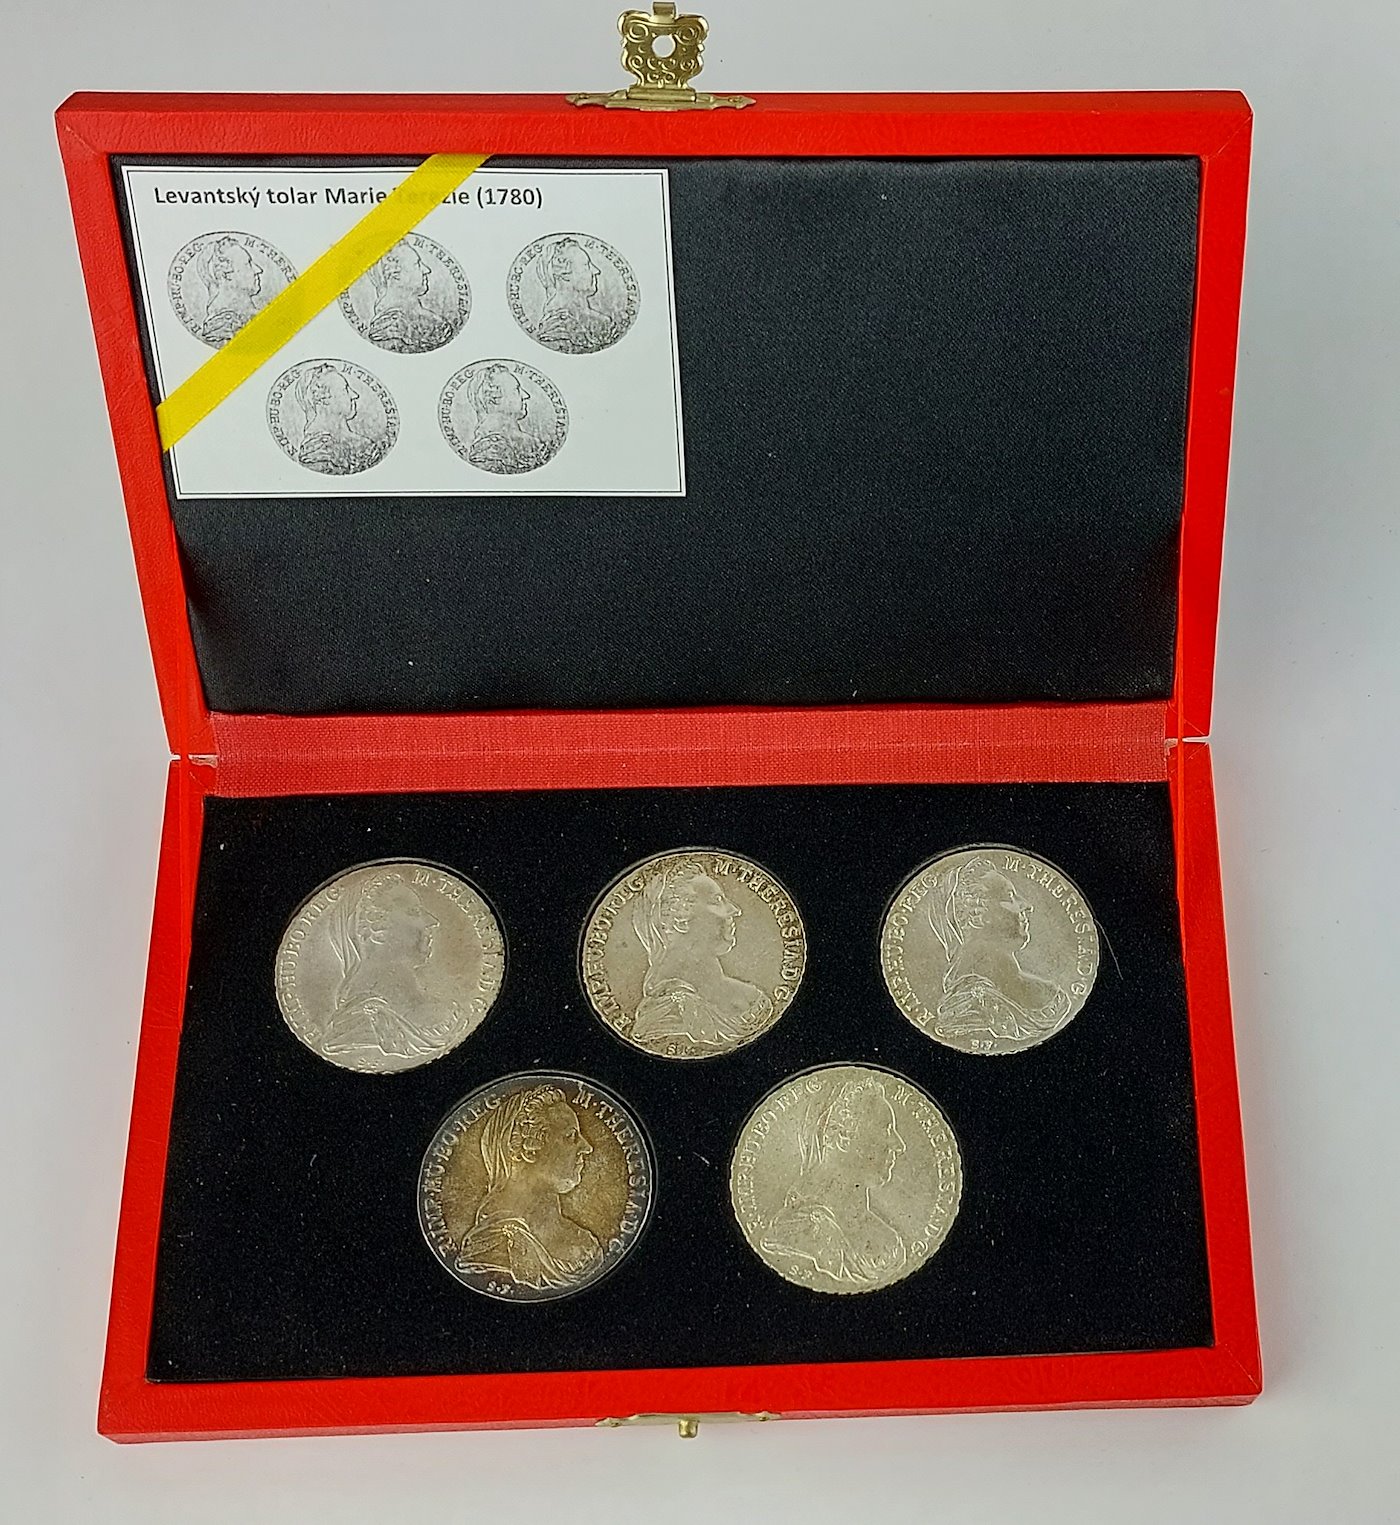 .. - Stříbrná SADA 5 kusů, Levanských Tolarů Marie Terezie 1780. Včetně mincovní kazety